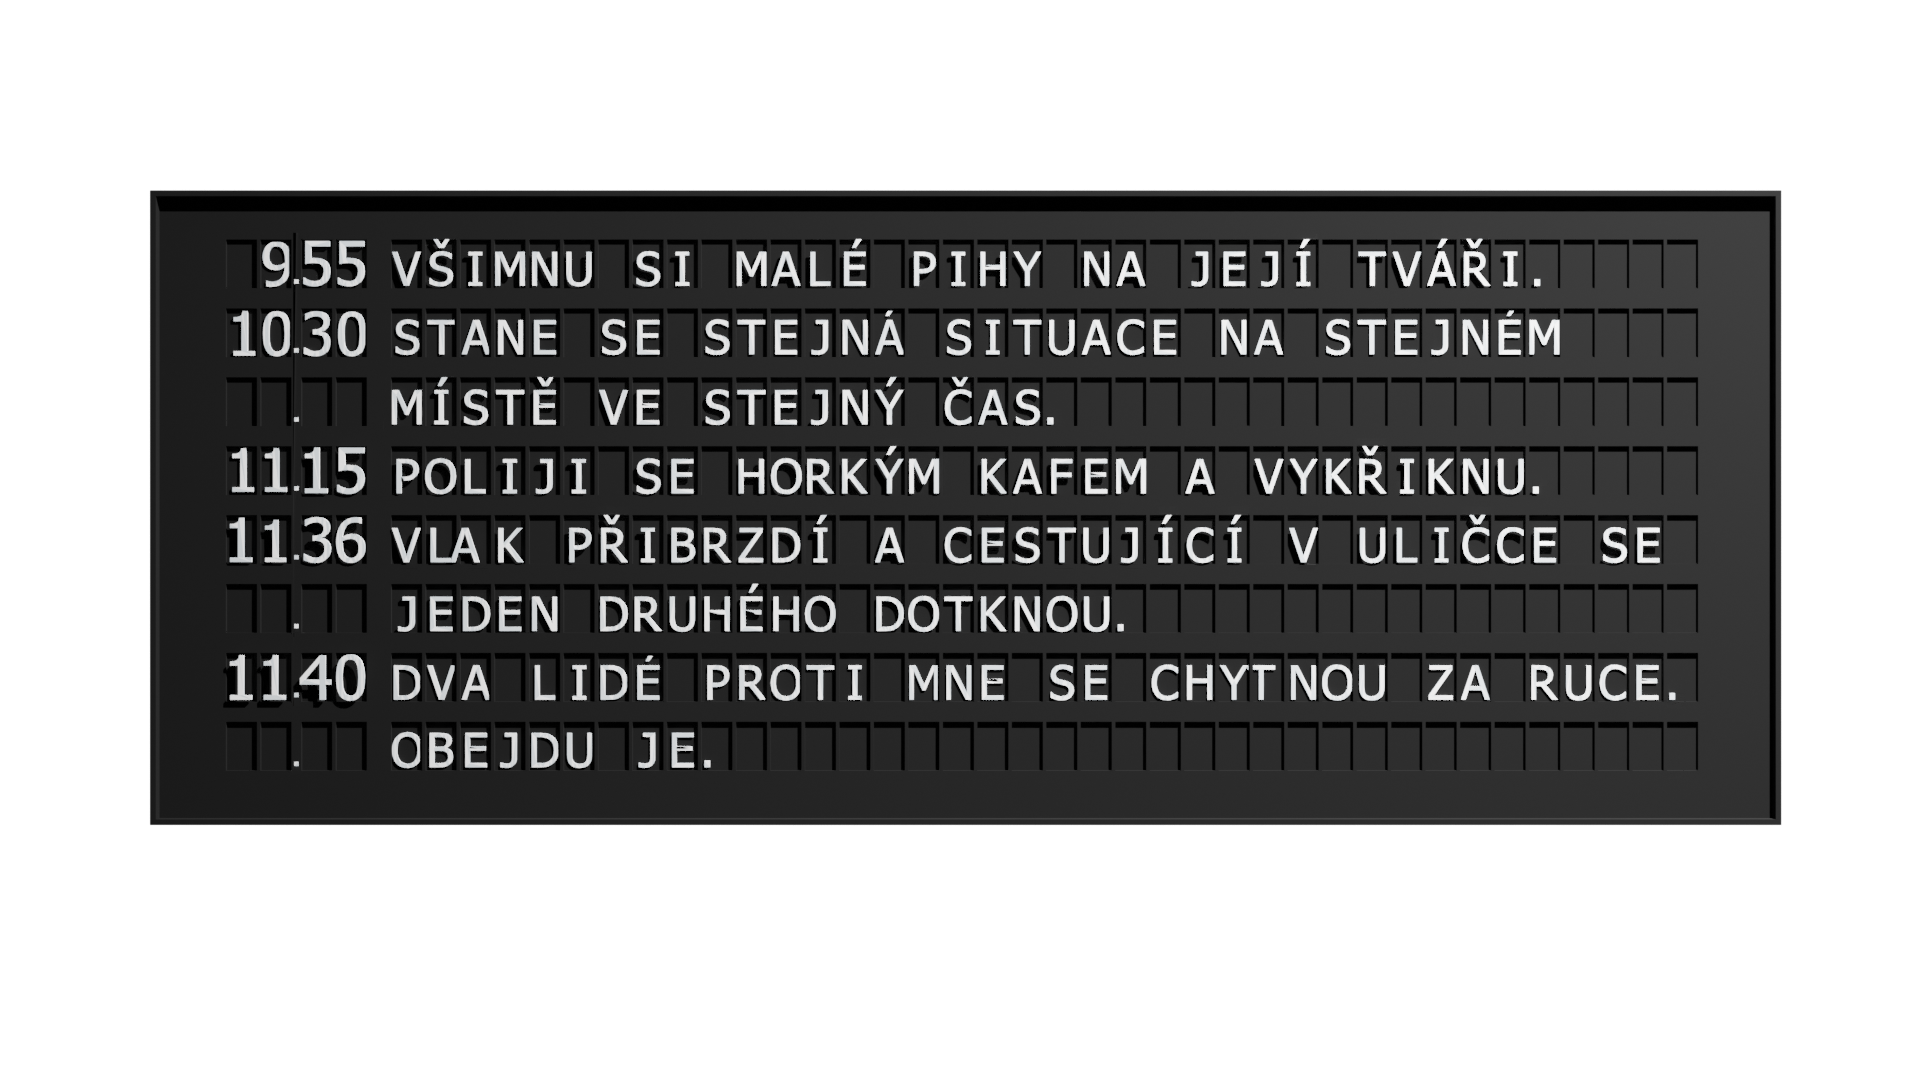 Vizualizace - soutěž pro Správu železnic na Hlavním nádraží v Praze - černá tabule - více info bude doplneno.png